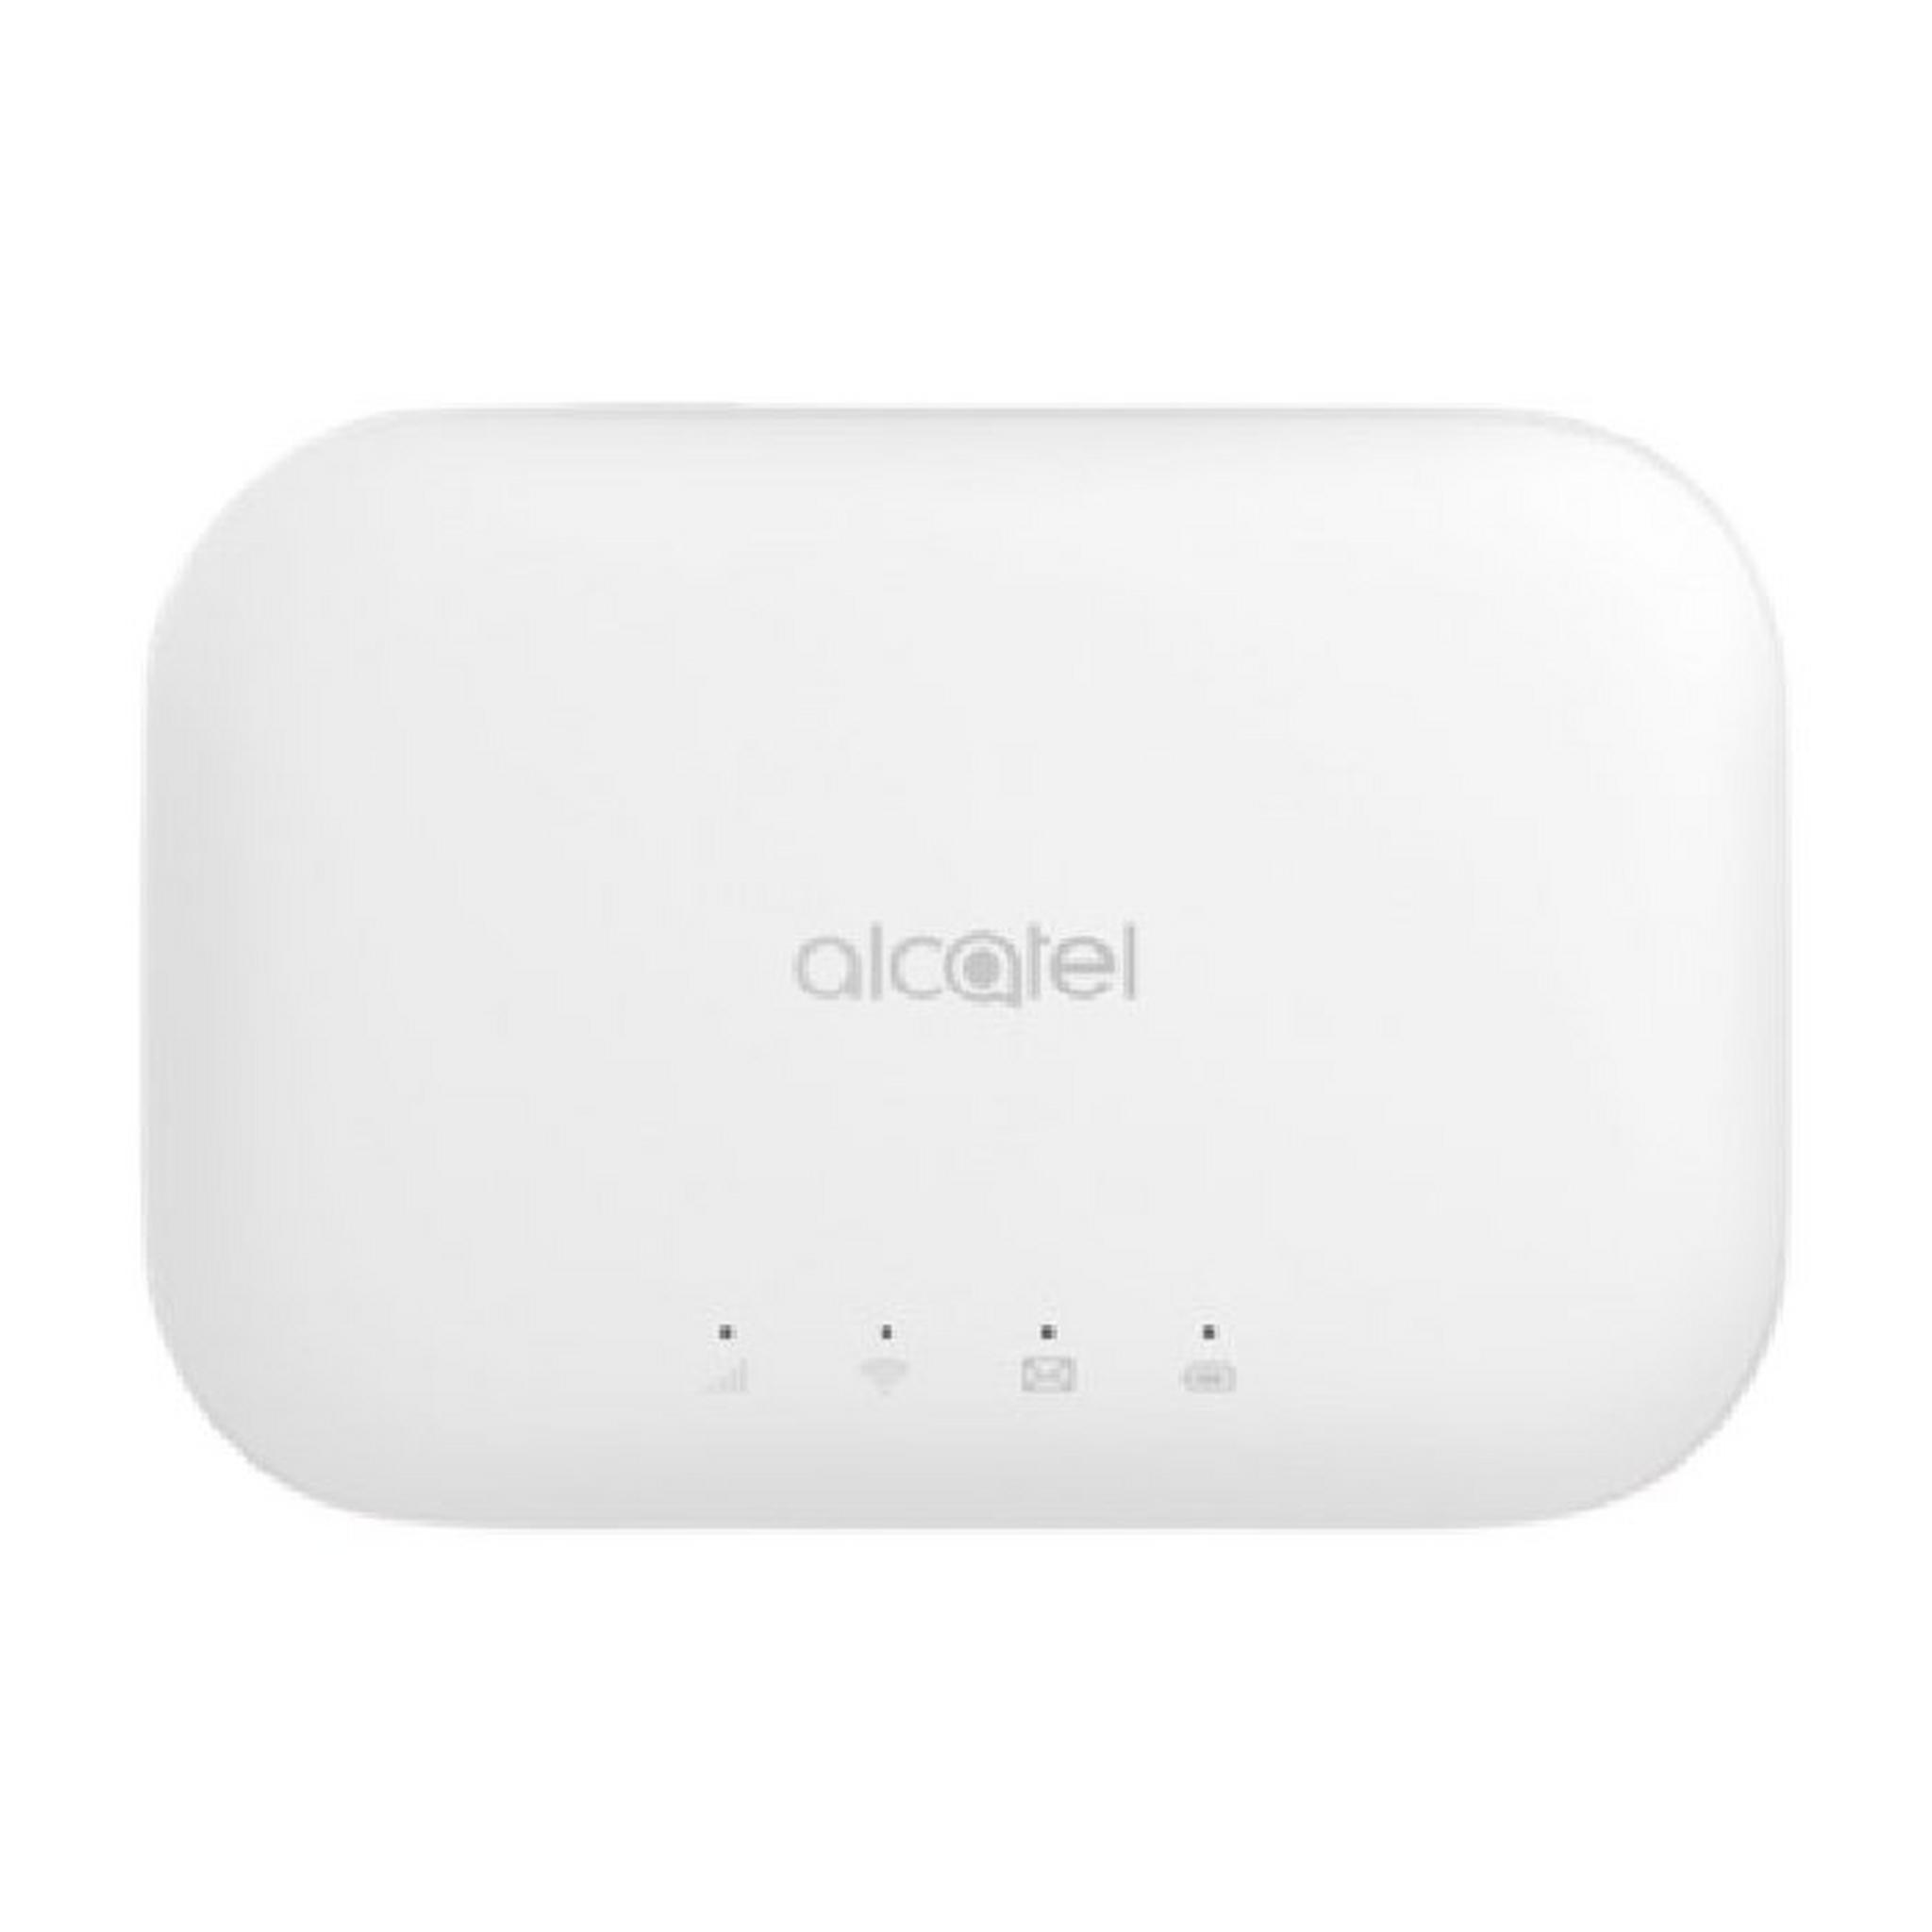 Alcatel Mobile Router 4G LTE (MW70) - White